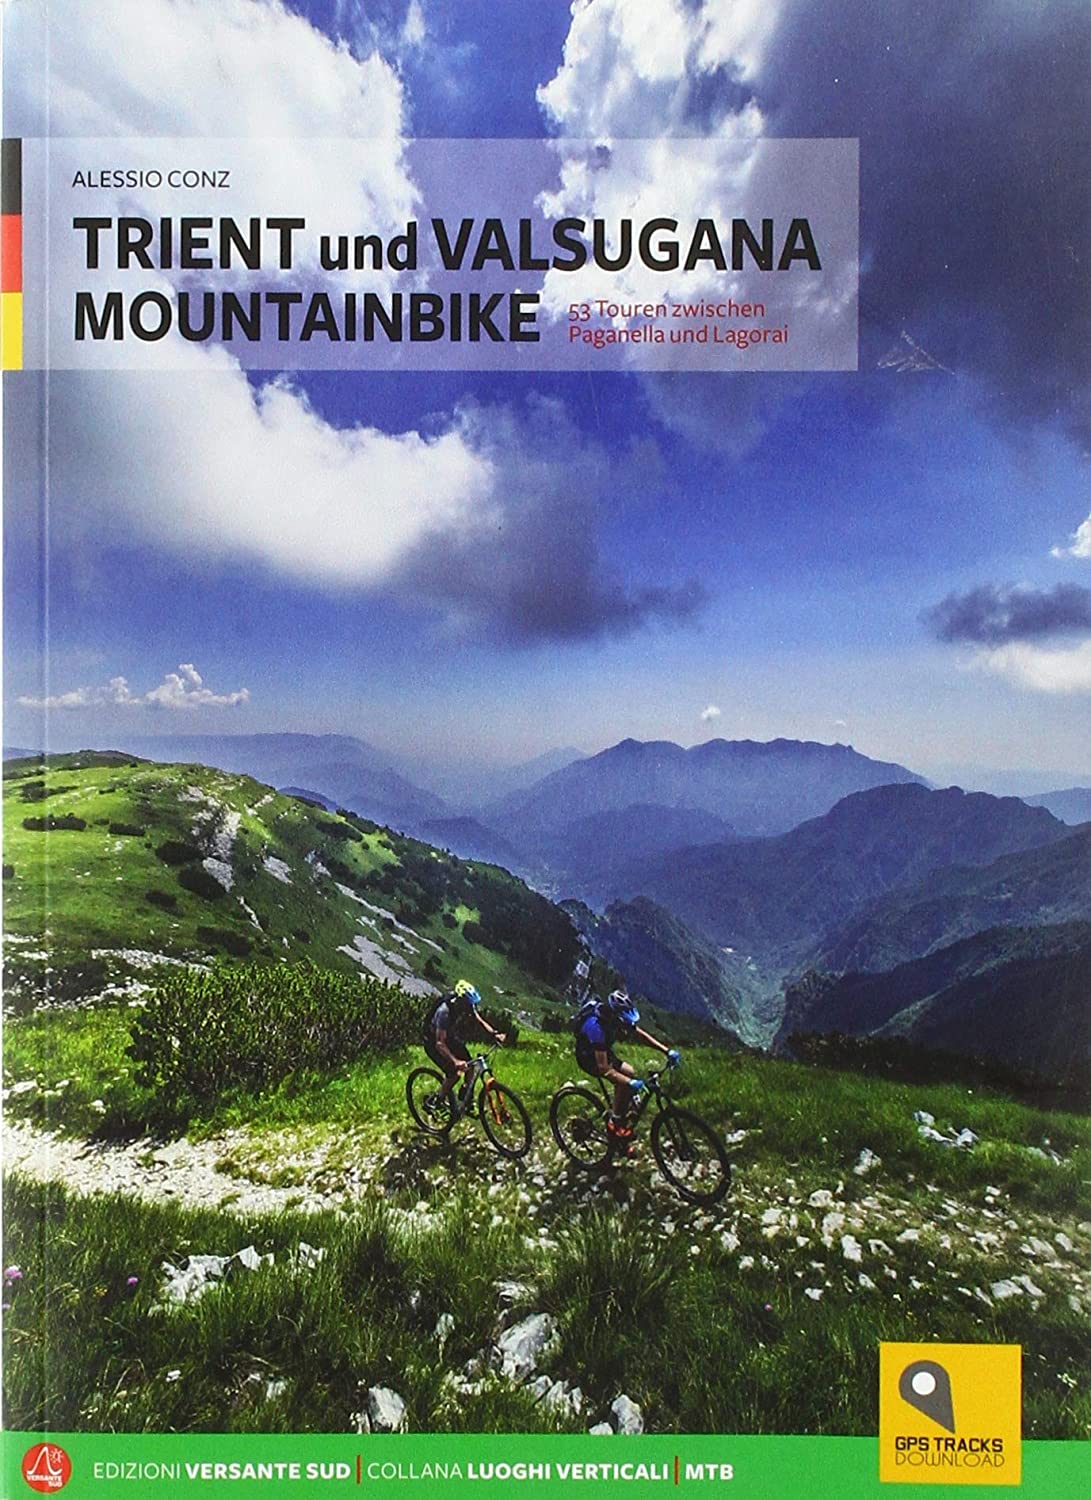 Libri Alessio Conz - Trient Und Valsugana Mountainbike NUOVO SIGILLATO, EDIZIONE DEL 16/07/2018 SUBITO DISPONIBILE